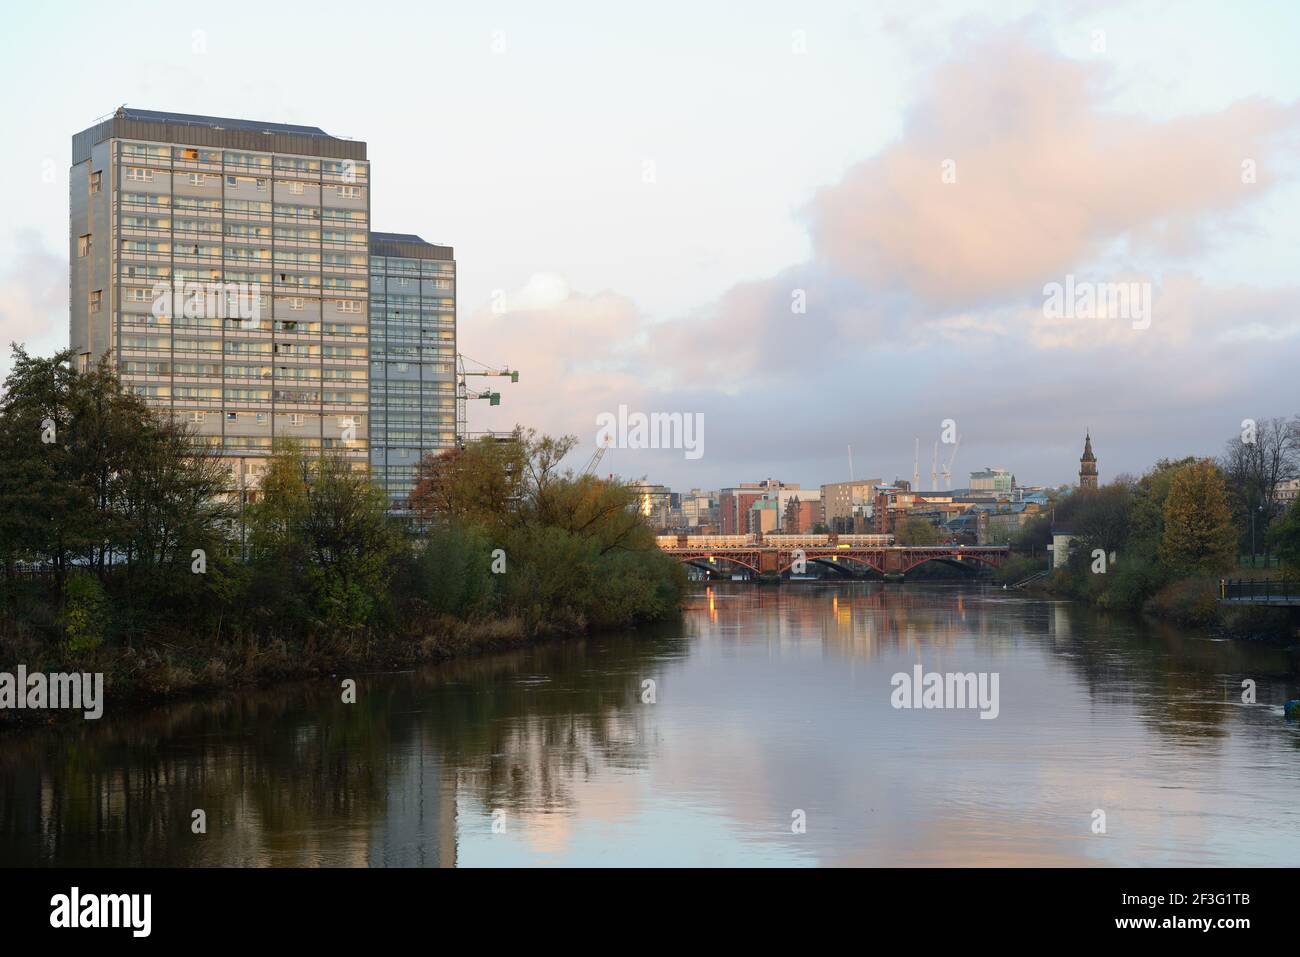 Hochhäuser mit Wohntürmen, die von der frühen Morgensonne am Fluss Clyde im Stadtzentrum von Glasgow, Schottland, Großbritannien, beleuchtet werden Stockfoto